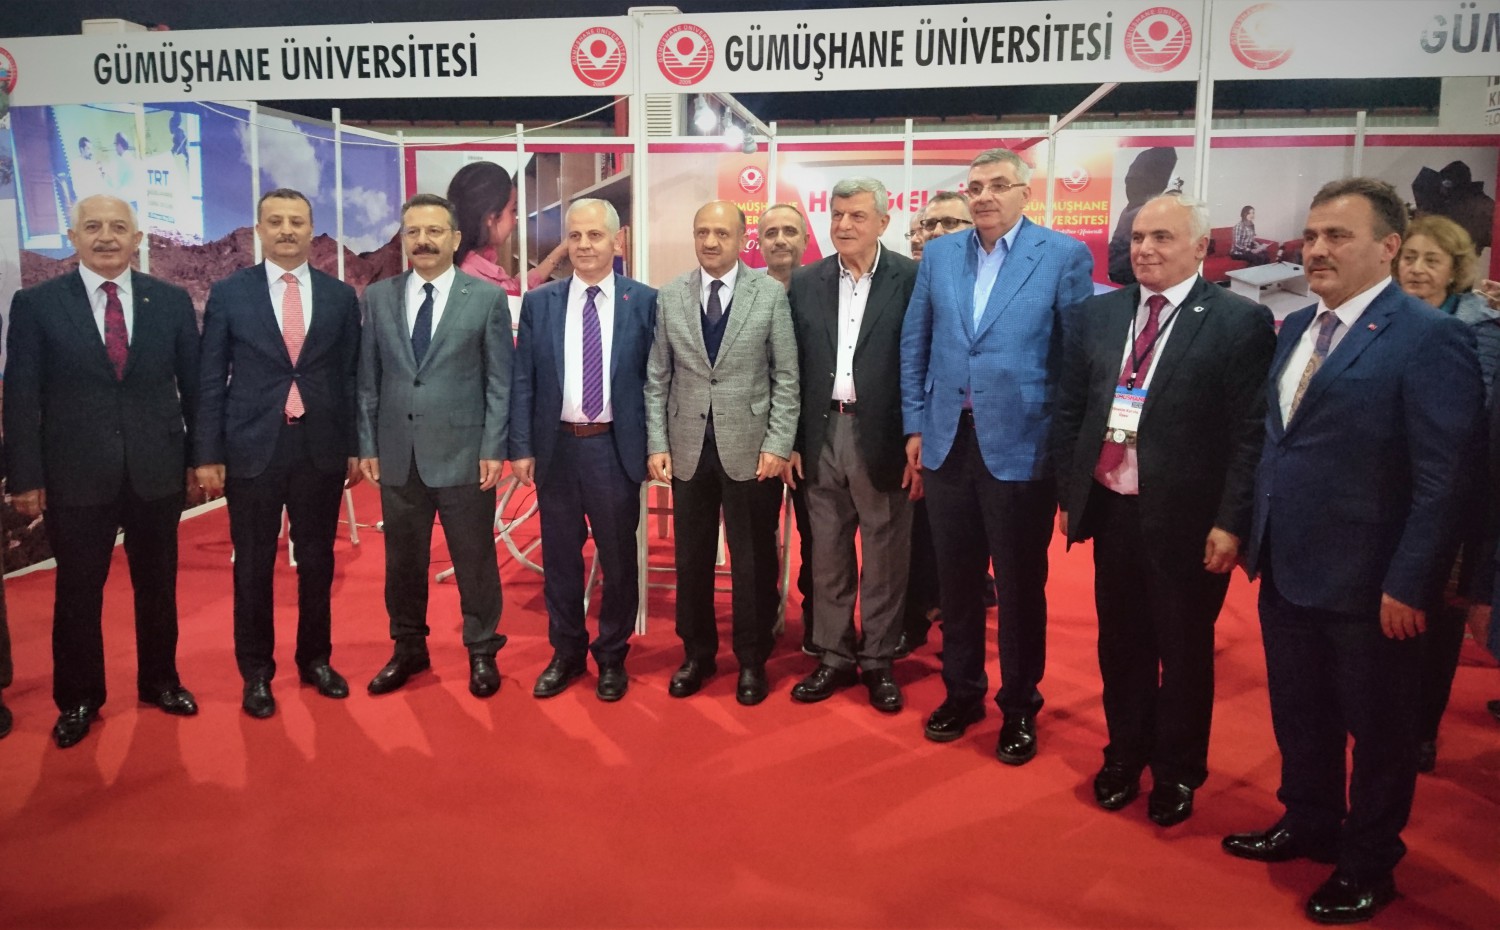 University in Gümüşhane Promotion Days